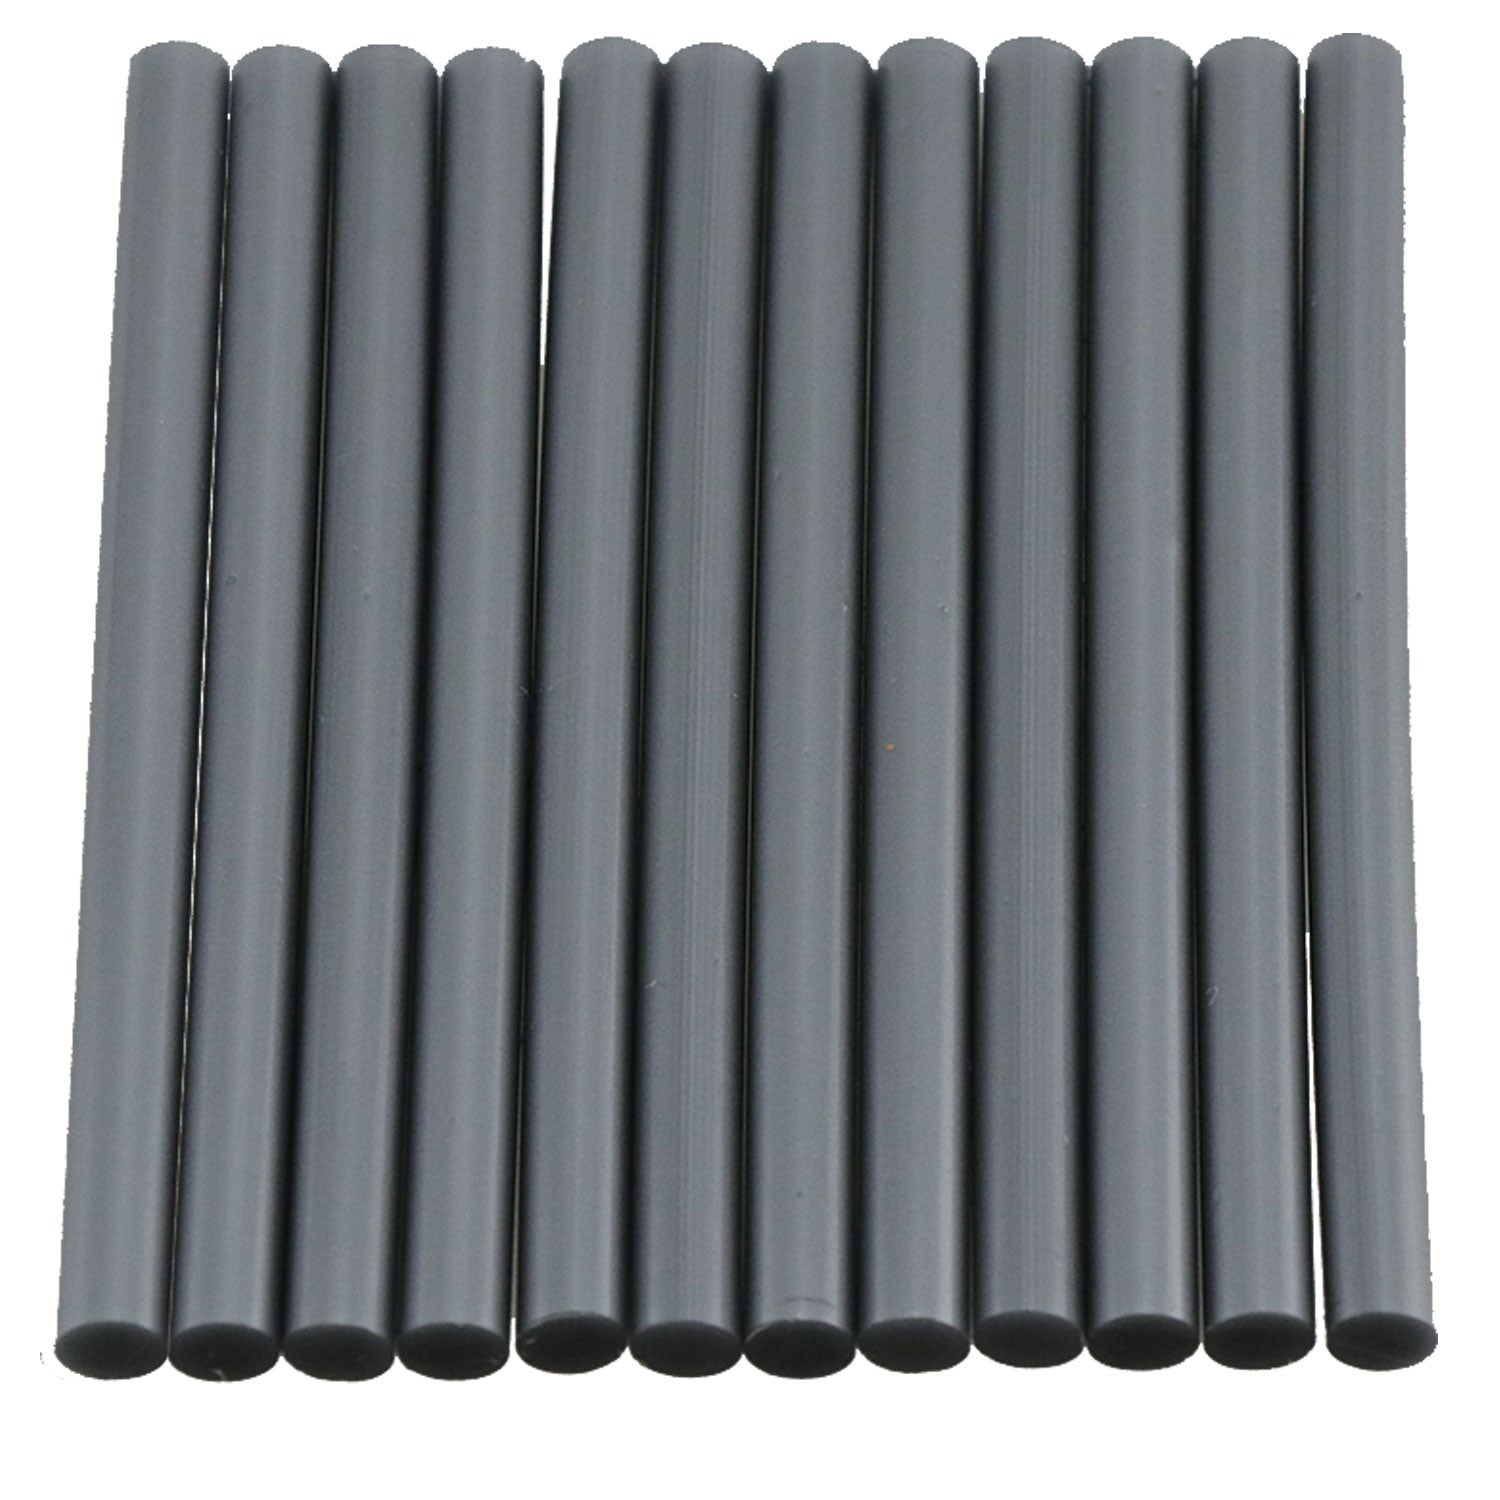 White Hot Glue Sticks Mini Size - 4 - 12 Pack – Surebonder